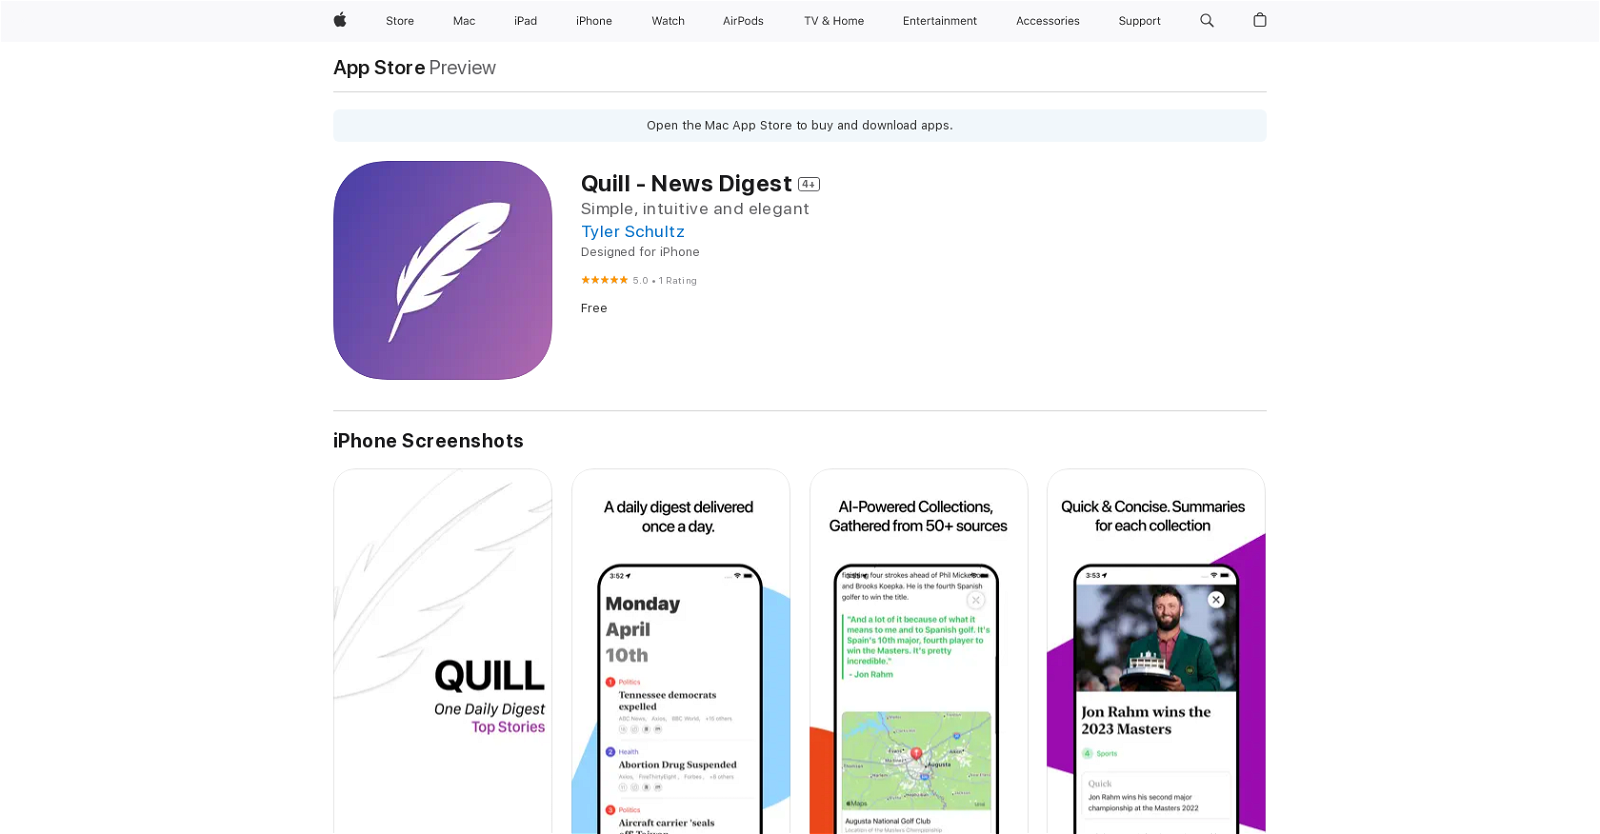 Quill - News Digest website